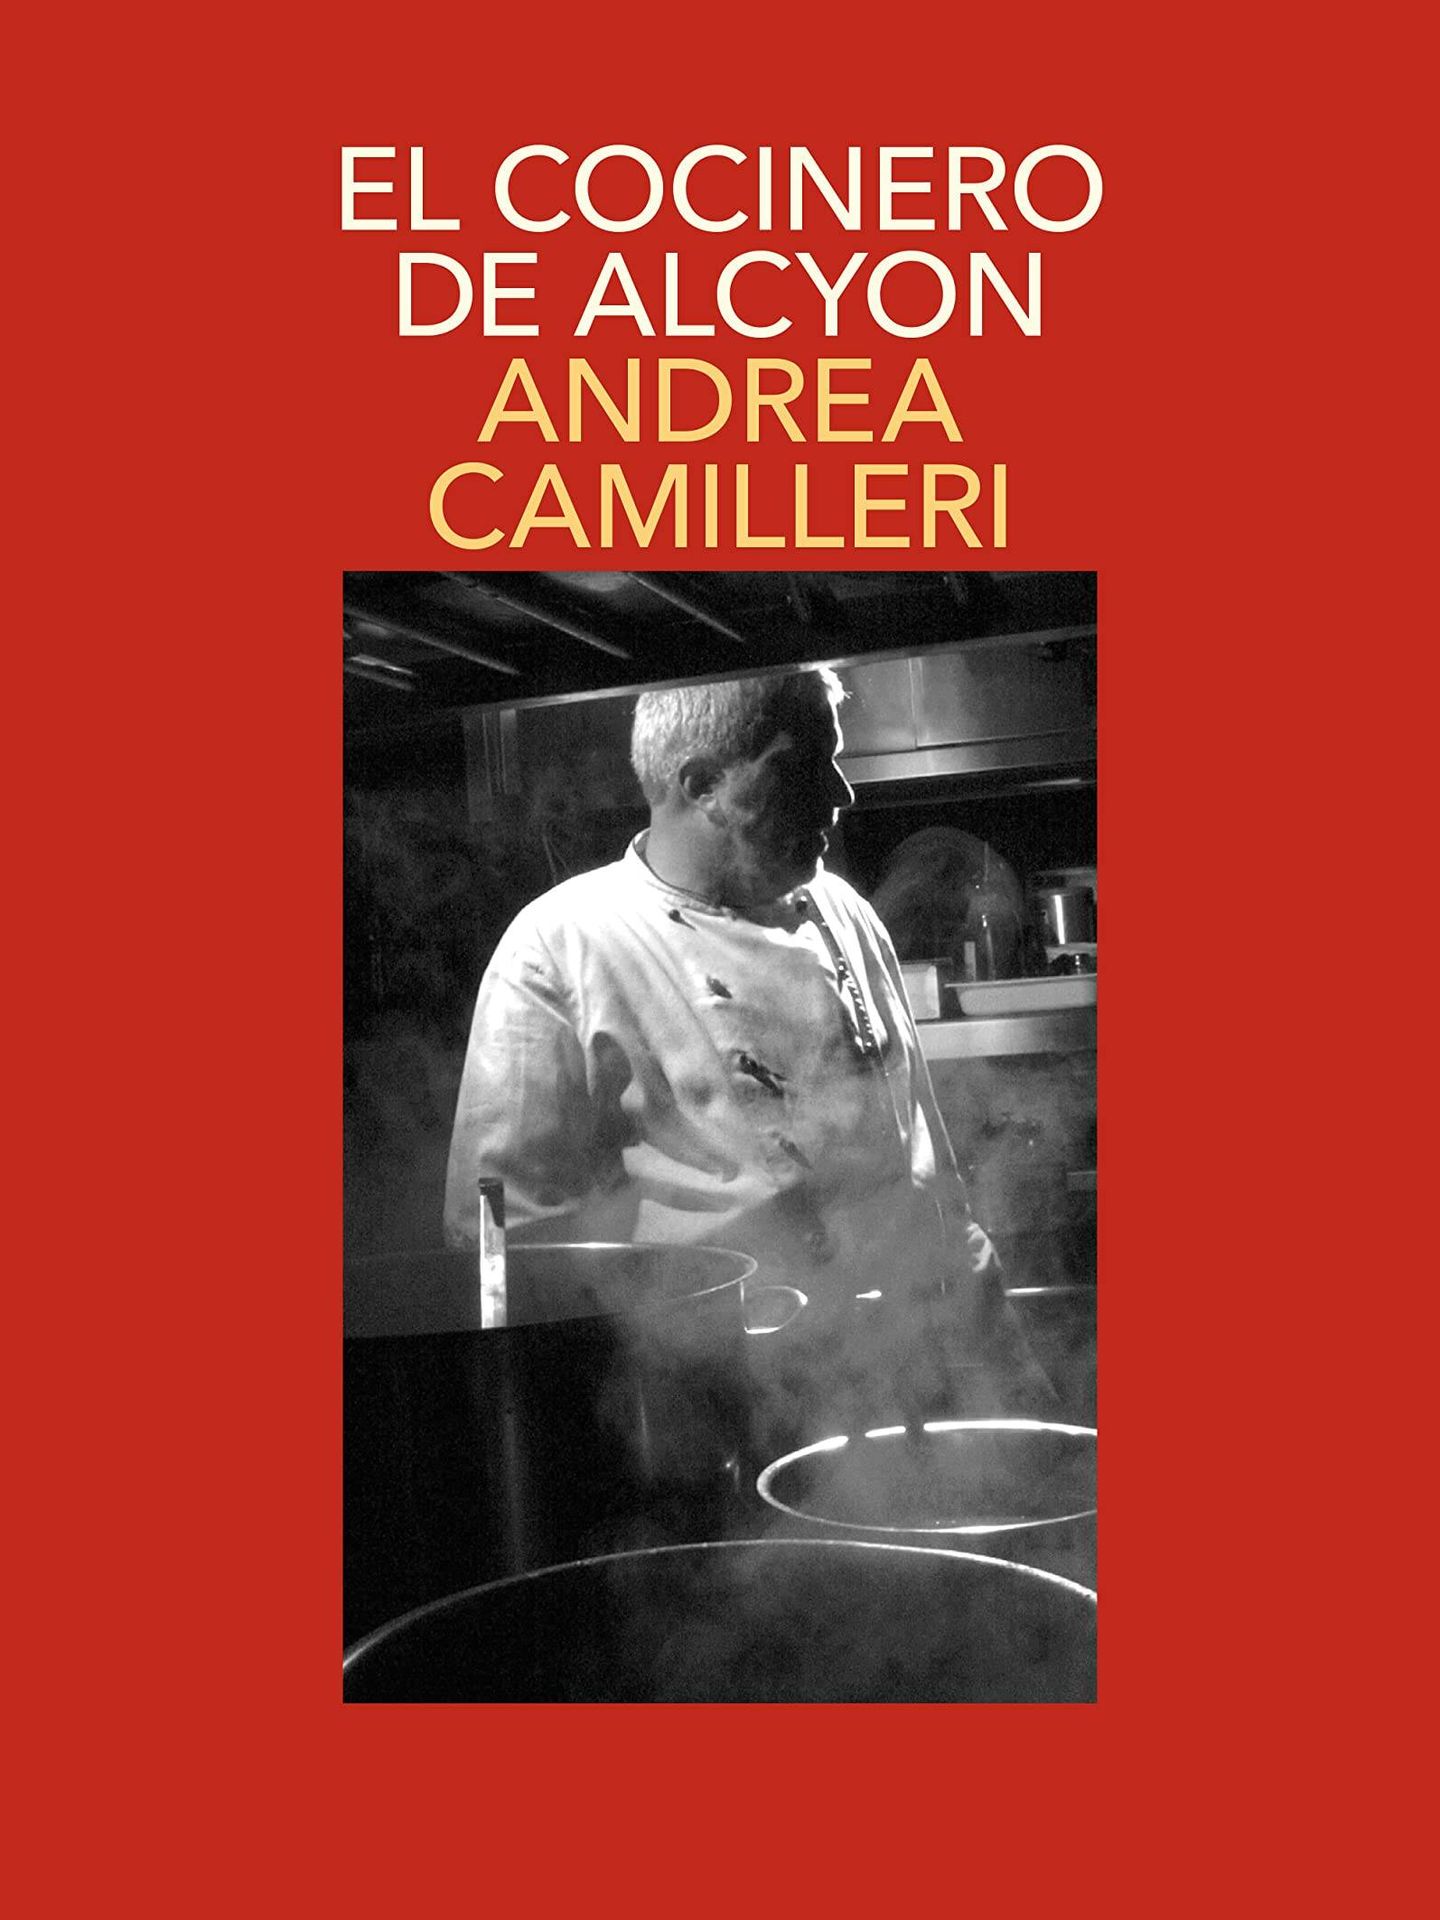 'El cocinero del Alcyon'.